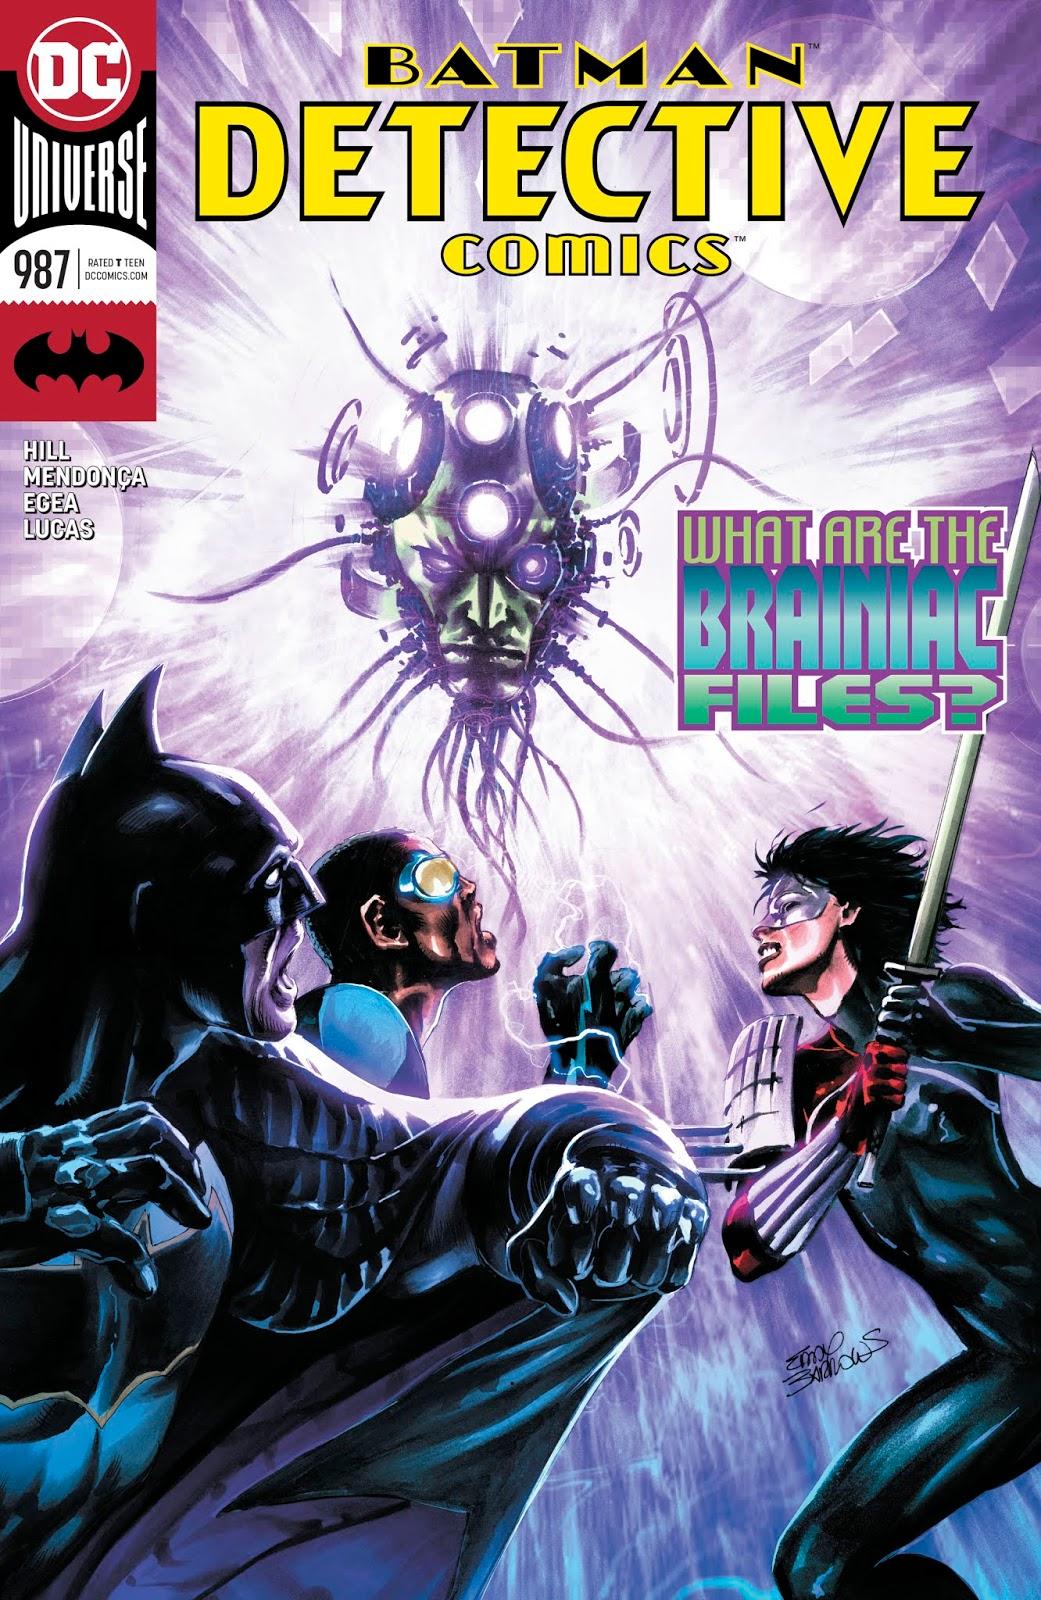 Detective Comics Vol. 1 #987